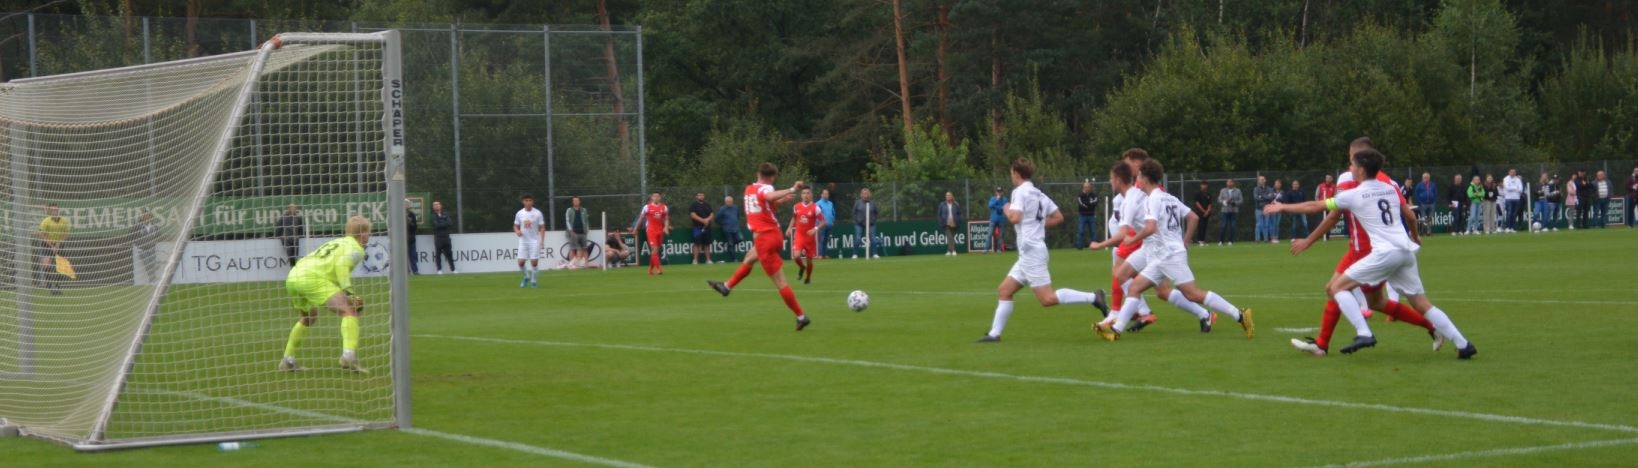 Kaiserslautern - U19